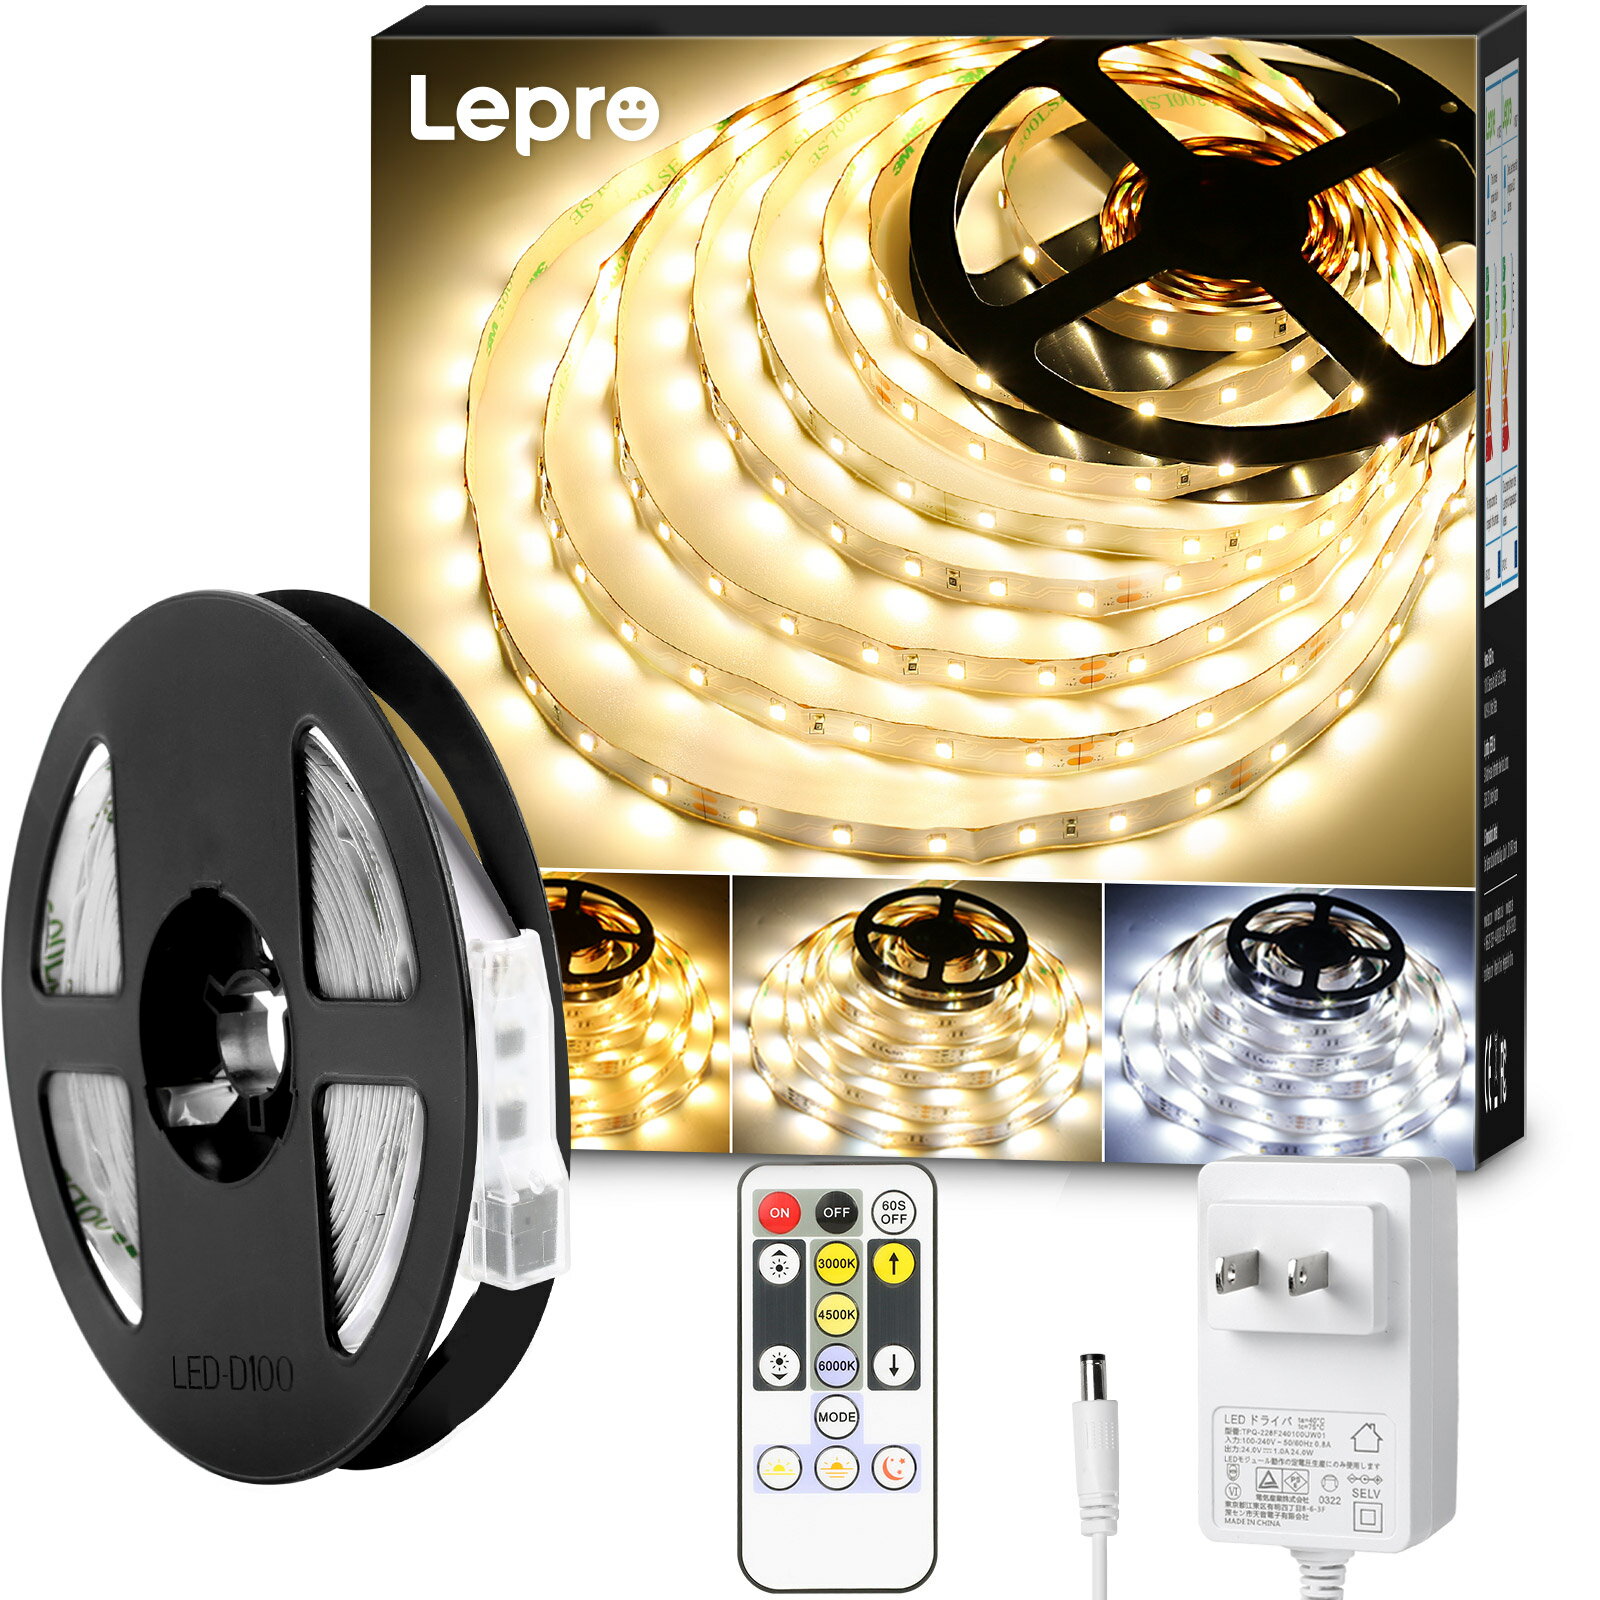 【2年保証】Lepro ledテープライト ledテープ 10メートル リモコン付き 調光調色 カット可能 取付簡単 イルミネーションライト 3ピン 2835SMD 店舗 室内 DIY ホーム装飾用